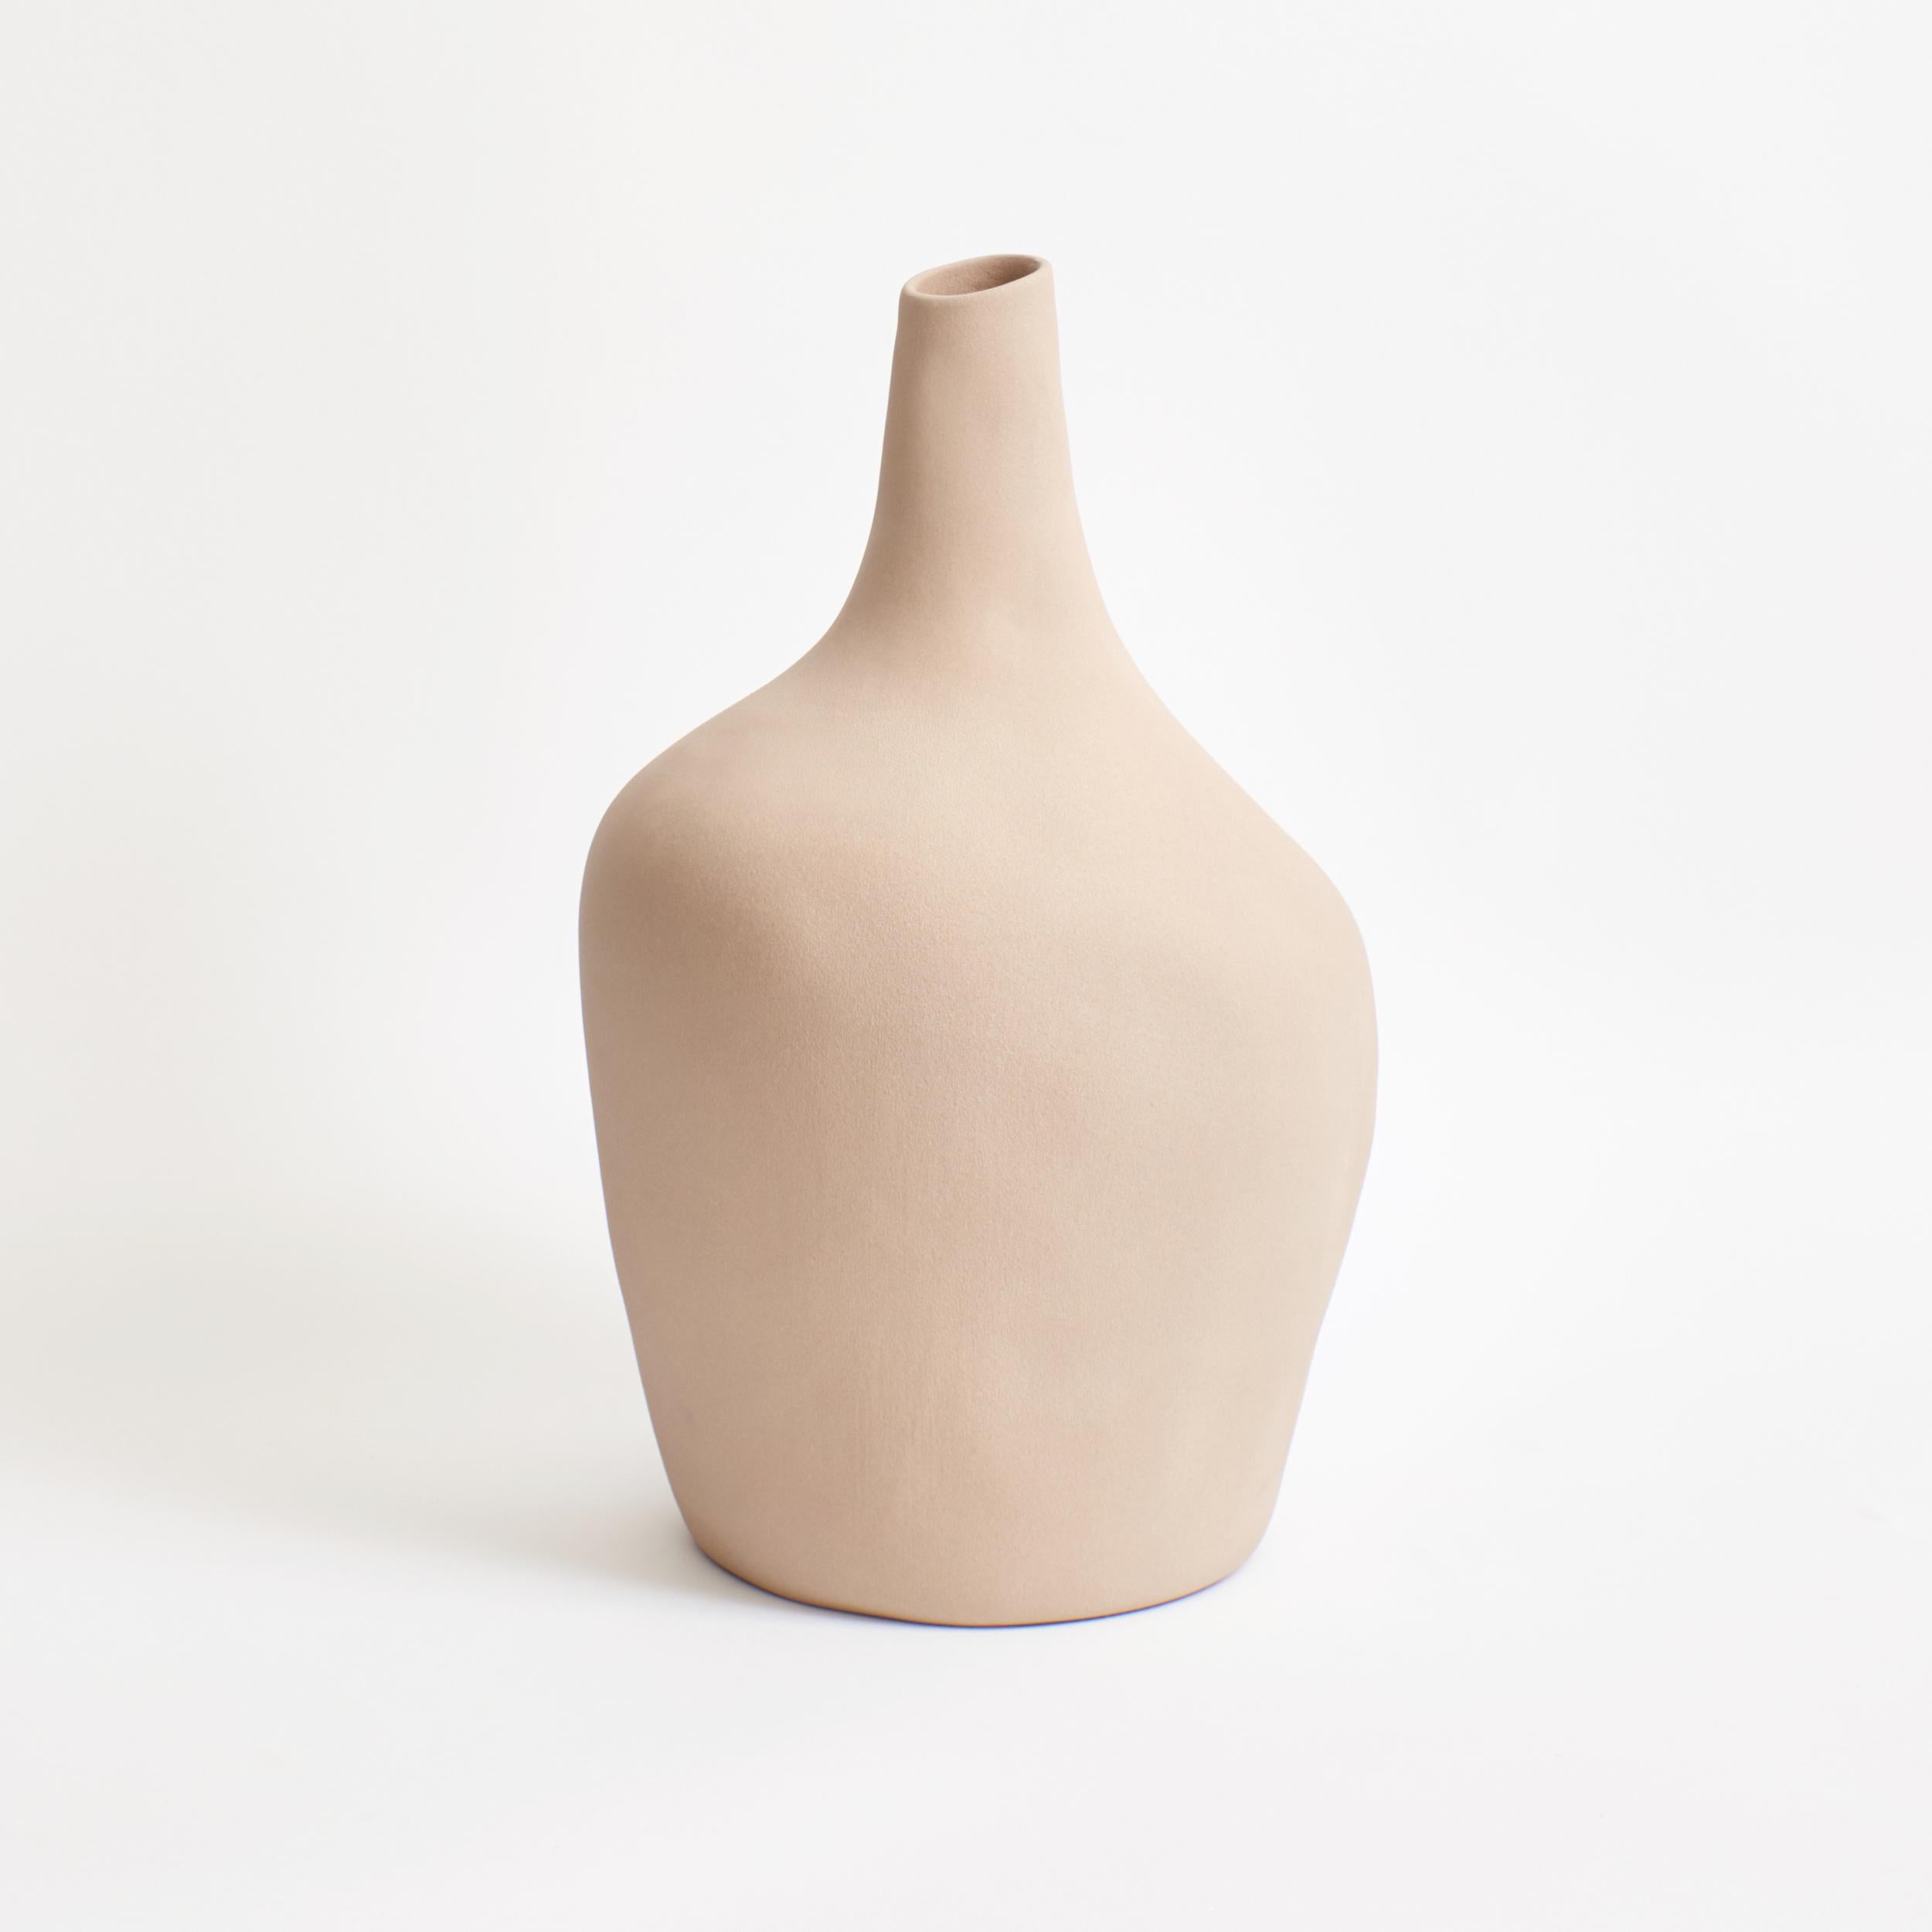 Le vase Sailor de le projet 213A a été conçu en 2020 et a été lancé en 2021.
Cette glaçure a une texture brute presque sablonneuse et est de couleur beige doux
Fabriqué à la main au Portugal par des artisans locaux.
Ce vase en grès est sculpté à